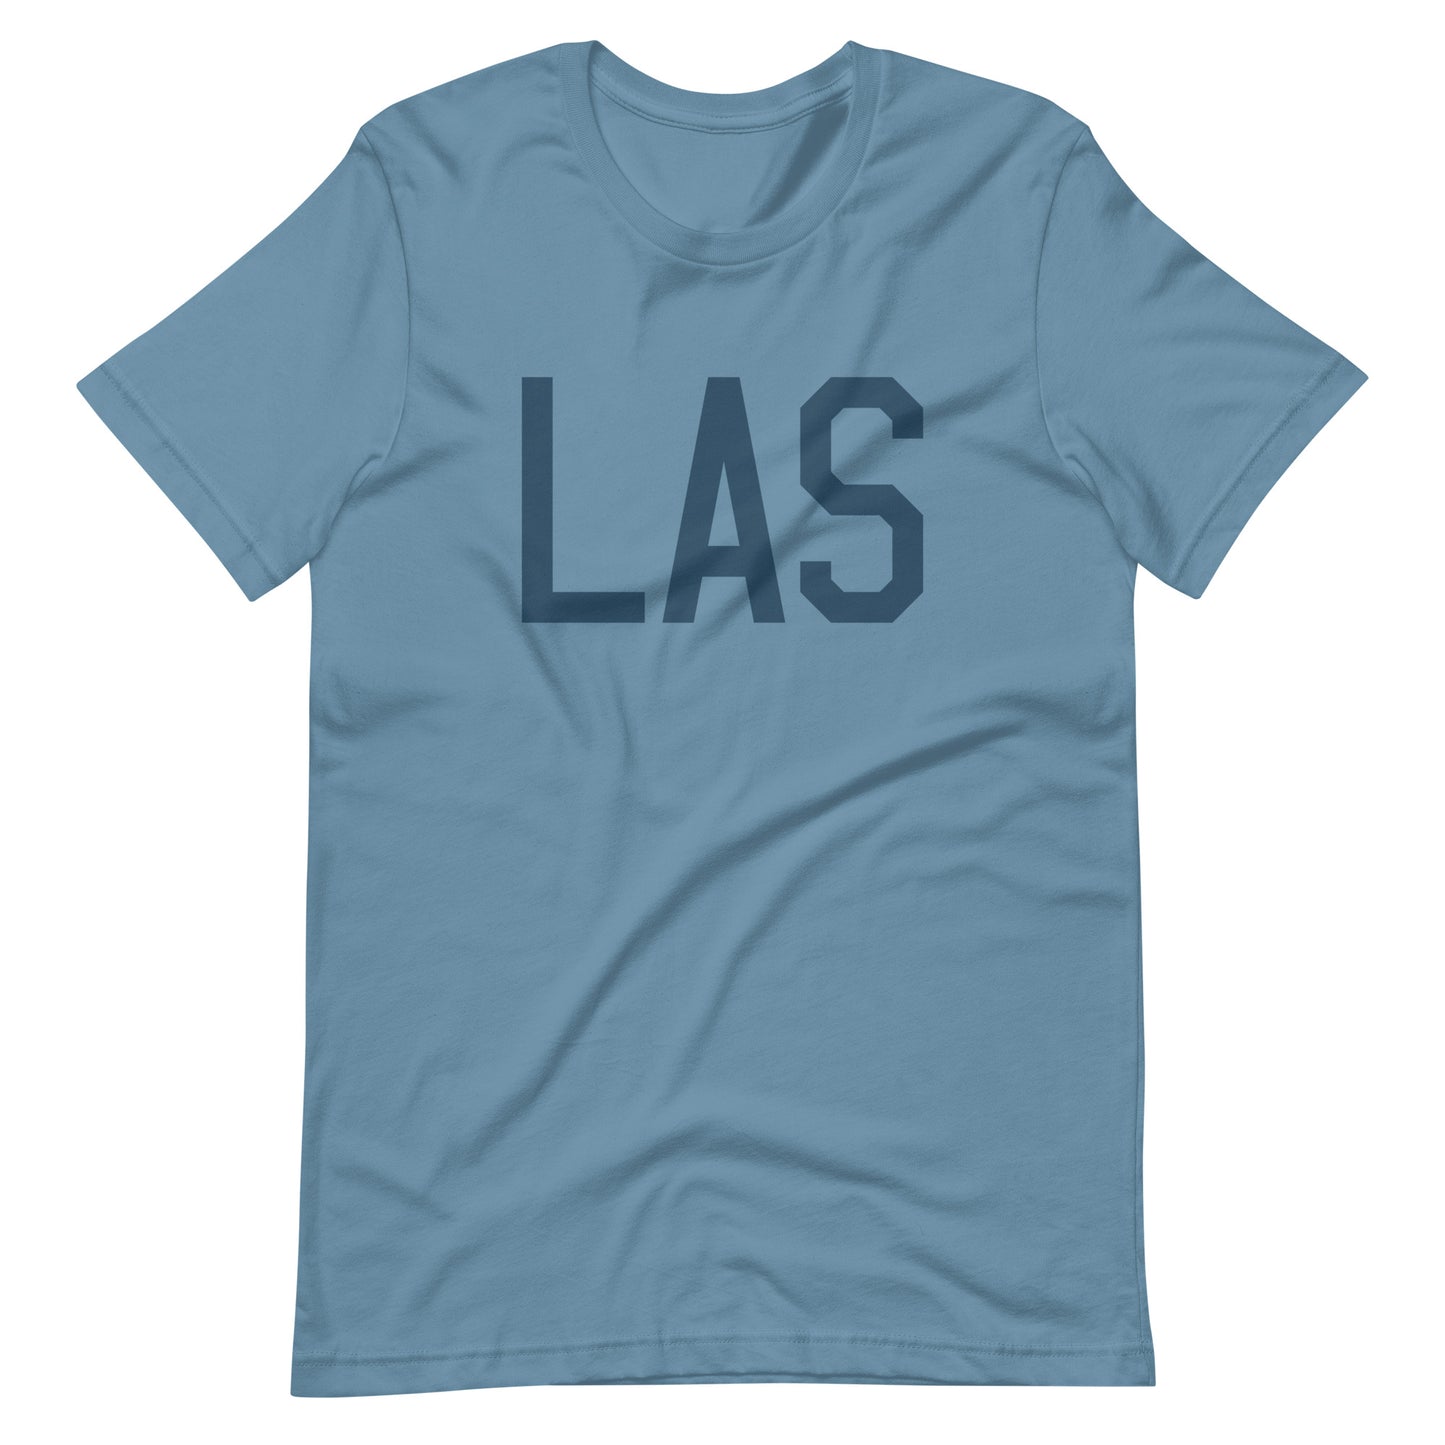 Aviation Lover Unisex T-Shirt - Blue Graphic • LAS Las Vegas • YHM Designs - Image 01